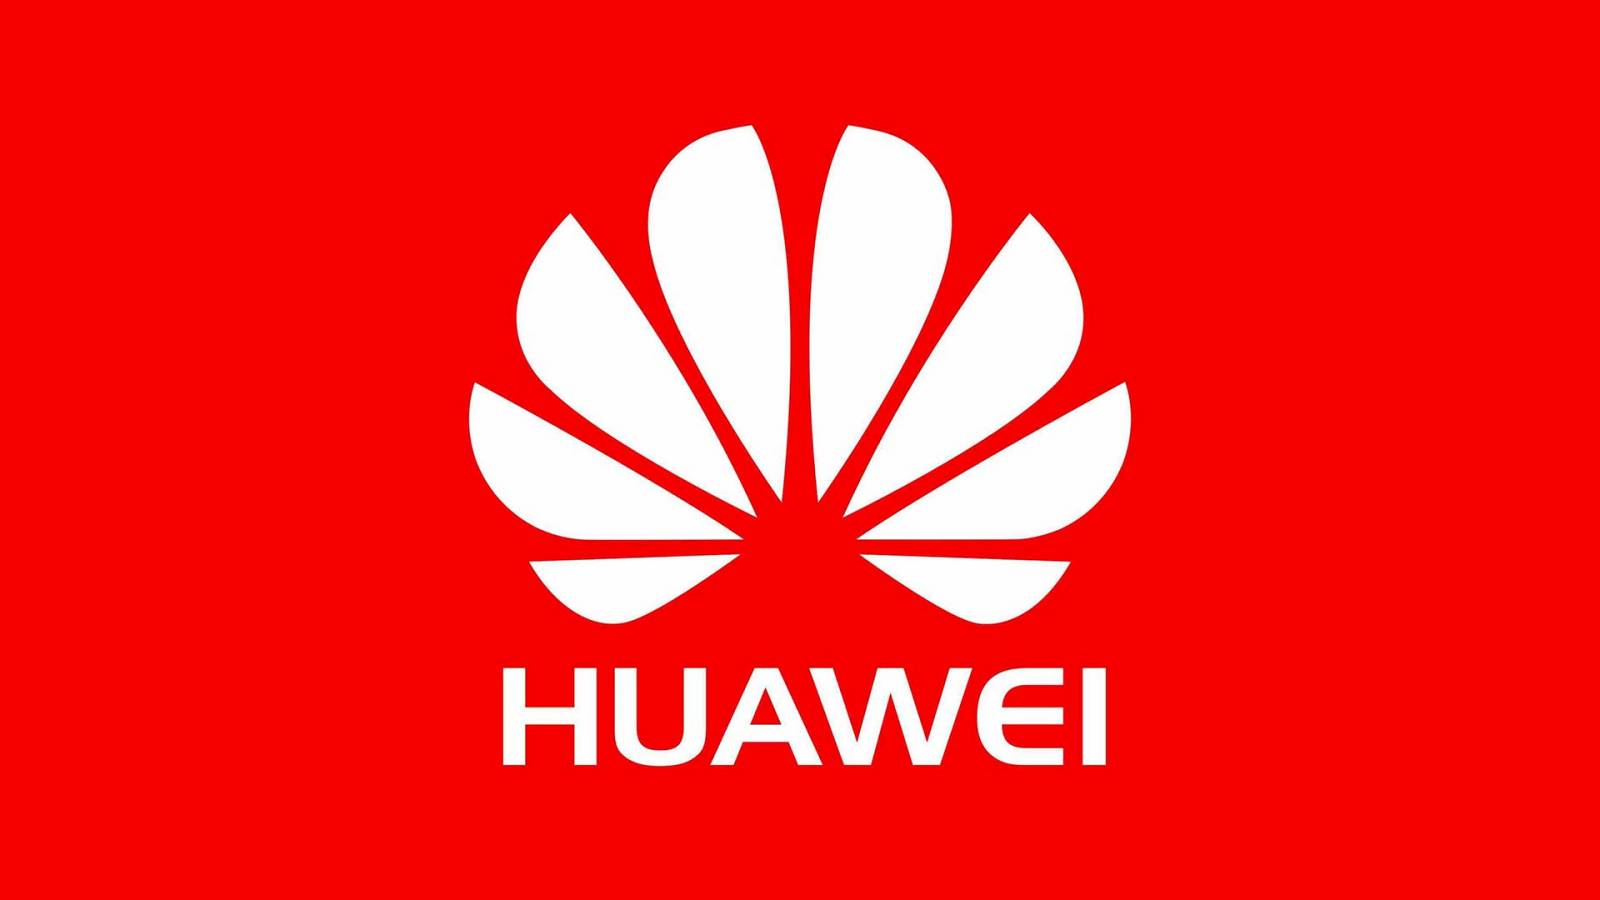 Huawei ośmiesza się w GŁUPI i Całkowicie bezużyteczny sposób